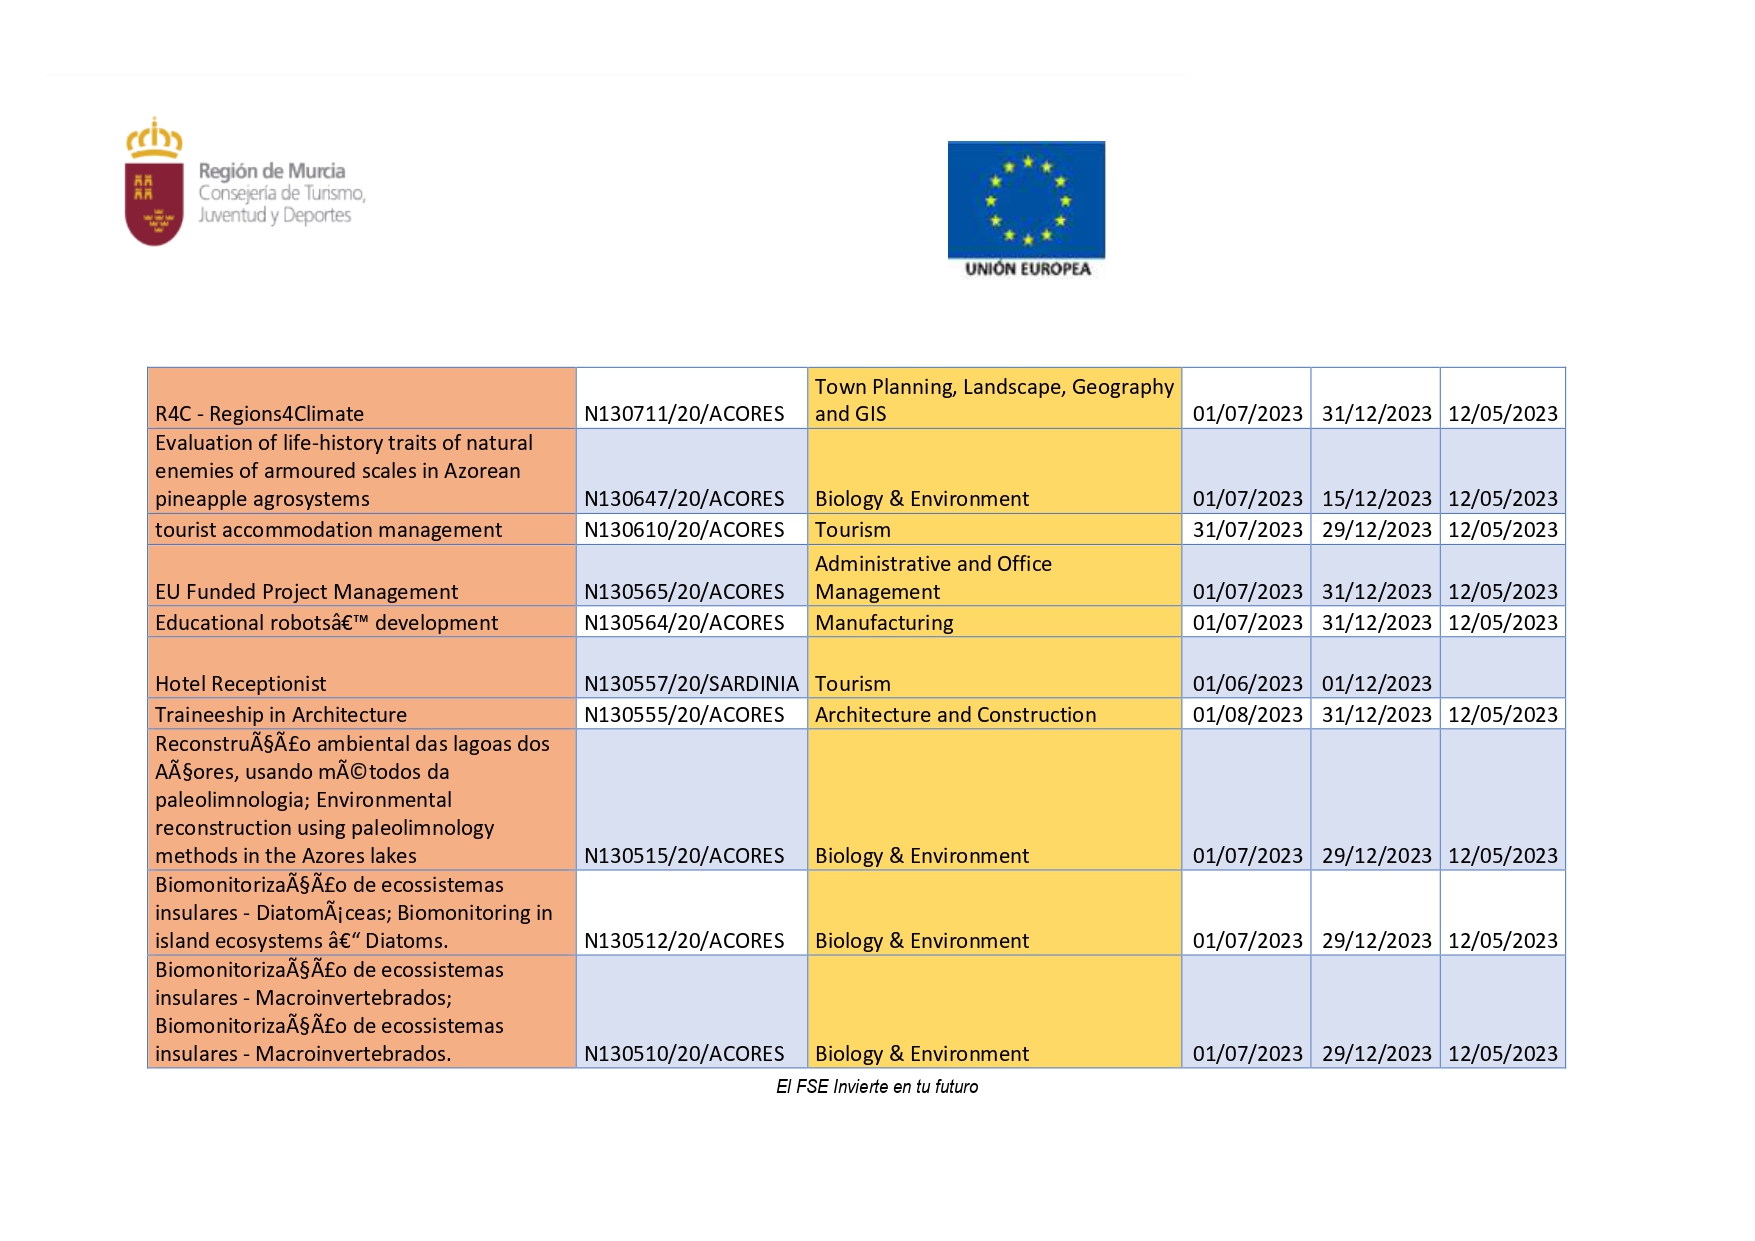 PROGRAMA DE PRÁCTICAS LABORALES REMUNERADAS EN EUROPA (Imagen 3)